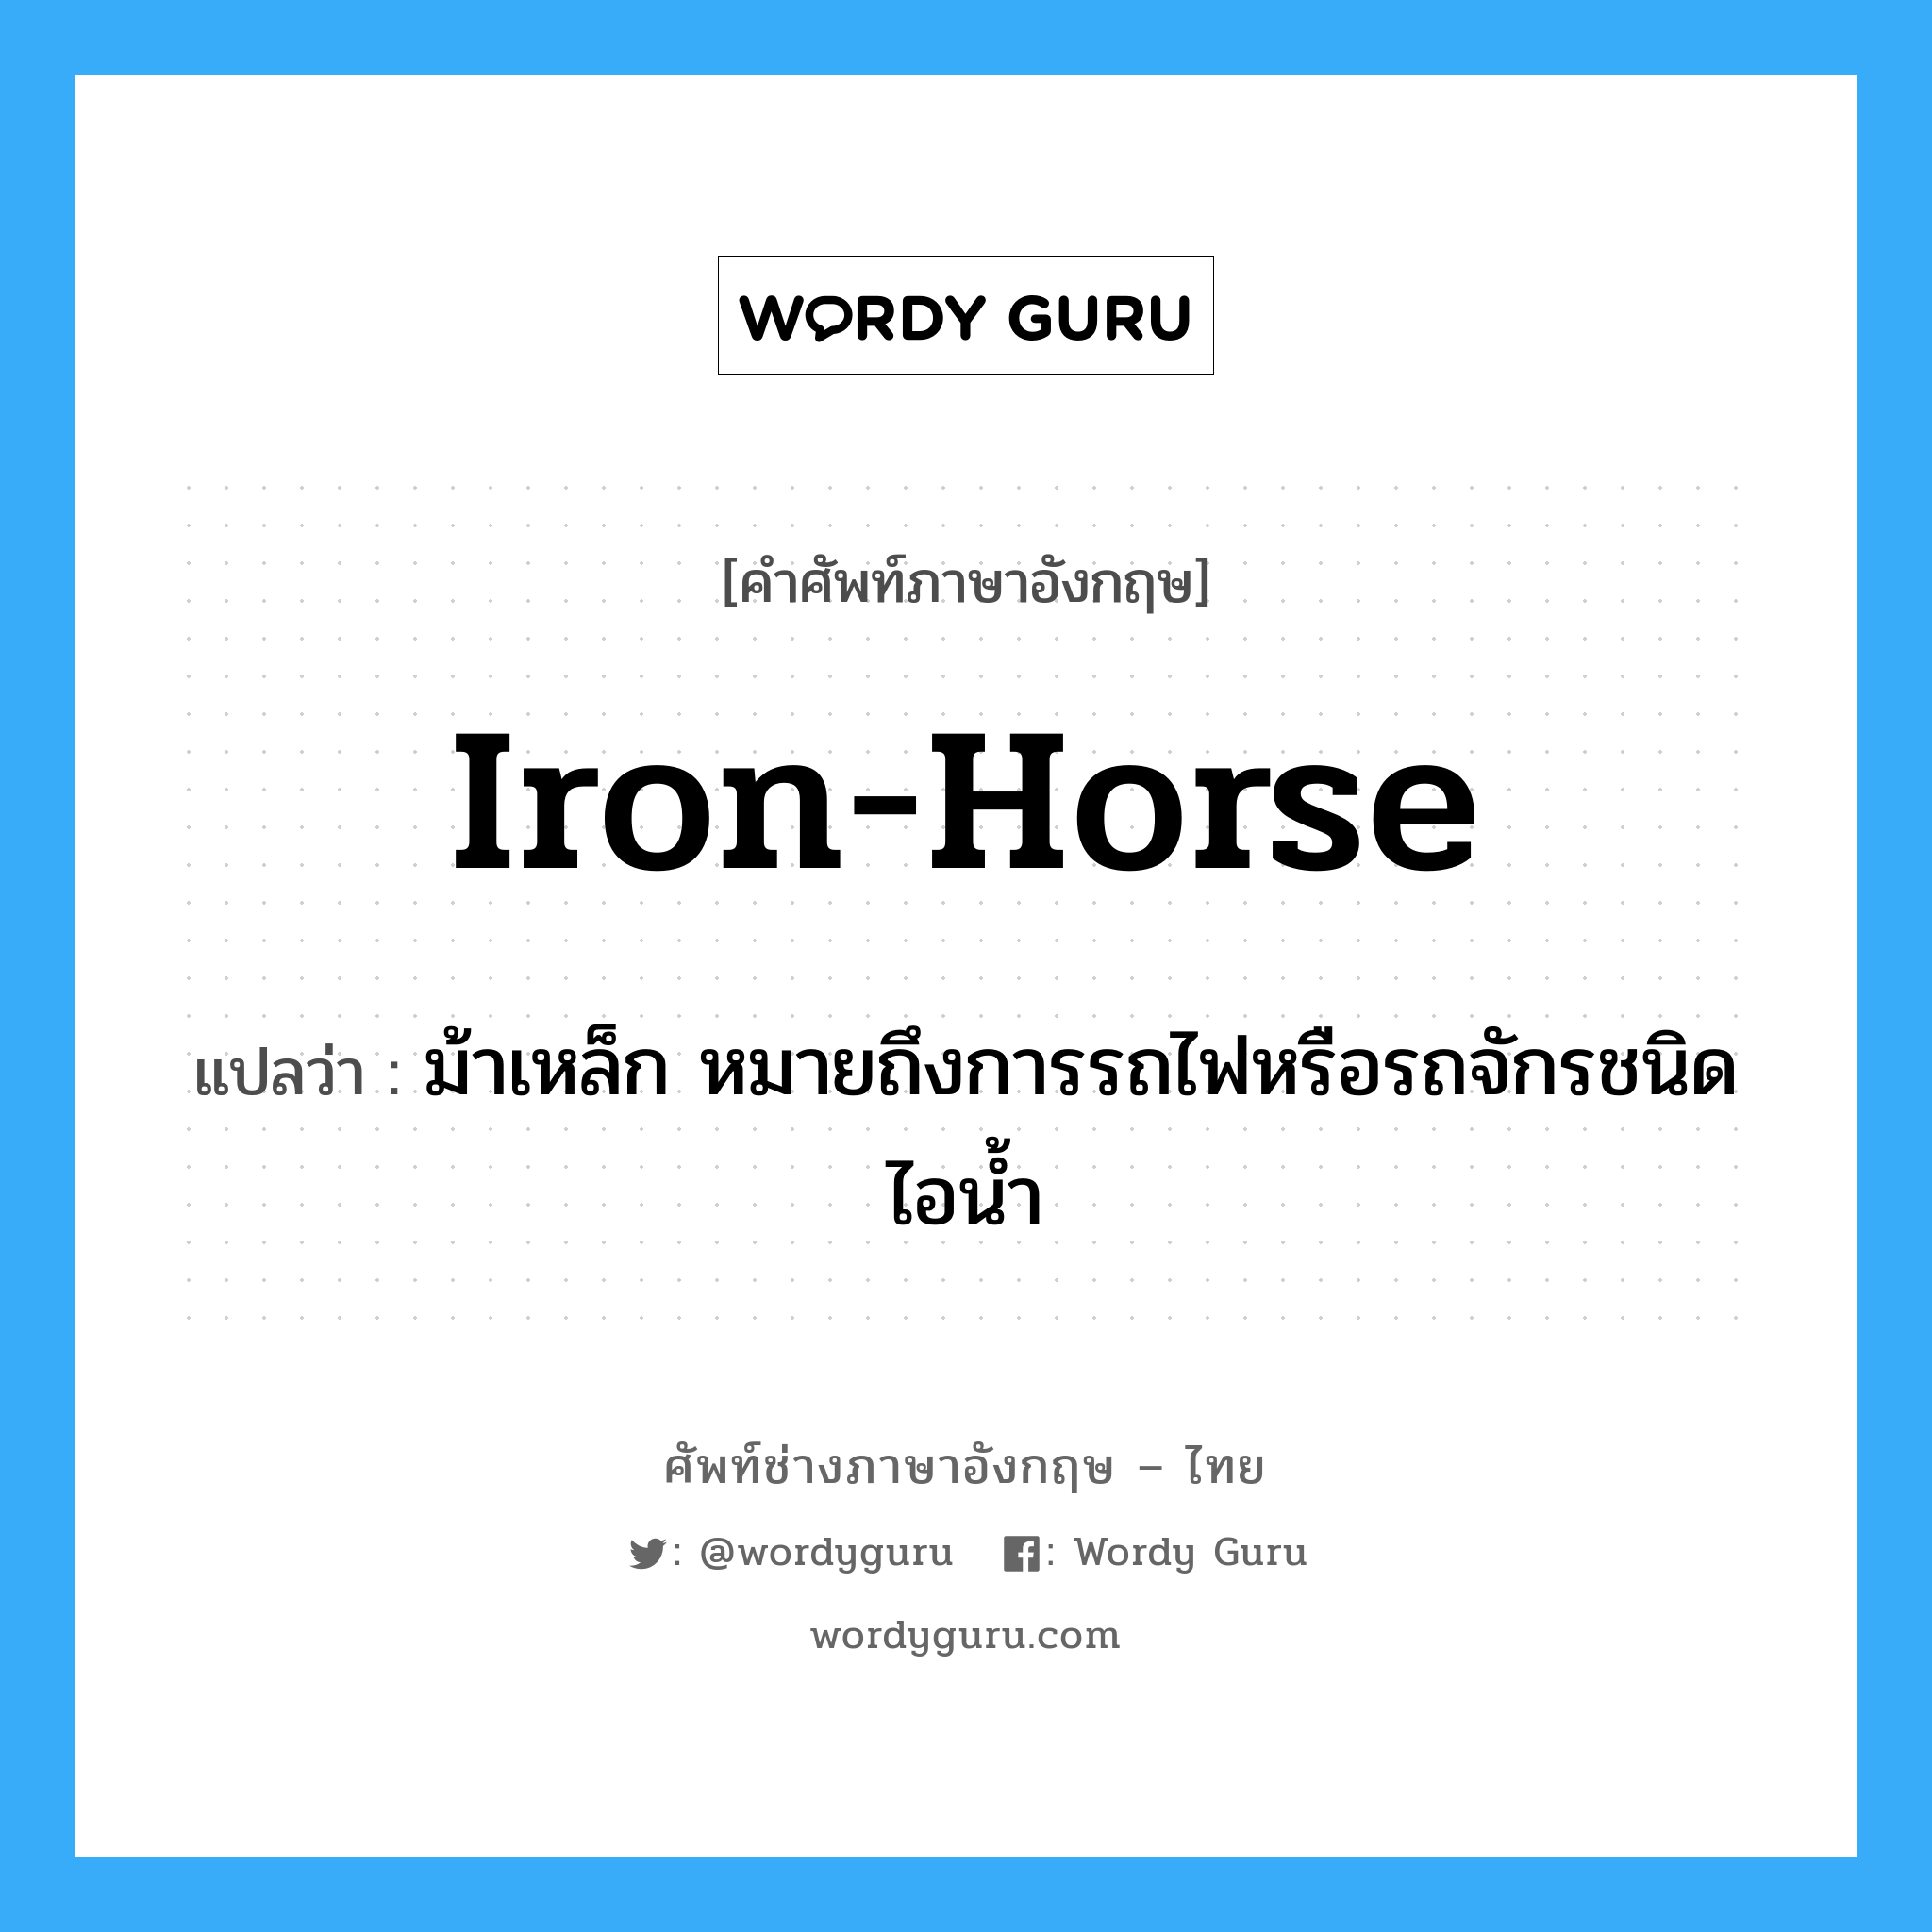 iron-horse แปลว่า?, คำศัพท์ช่างภาษาอังกฤษ - ไทย iron-horse คำศัพท์ภาษาอังกฤษ iron-horse แปลว่า ม้าเหล็ก หมายถึงการรถไฟหรือรถจักรชนิดไอน้ำ